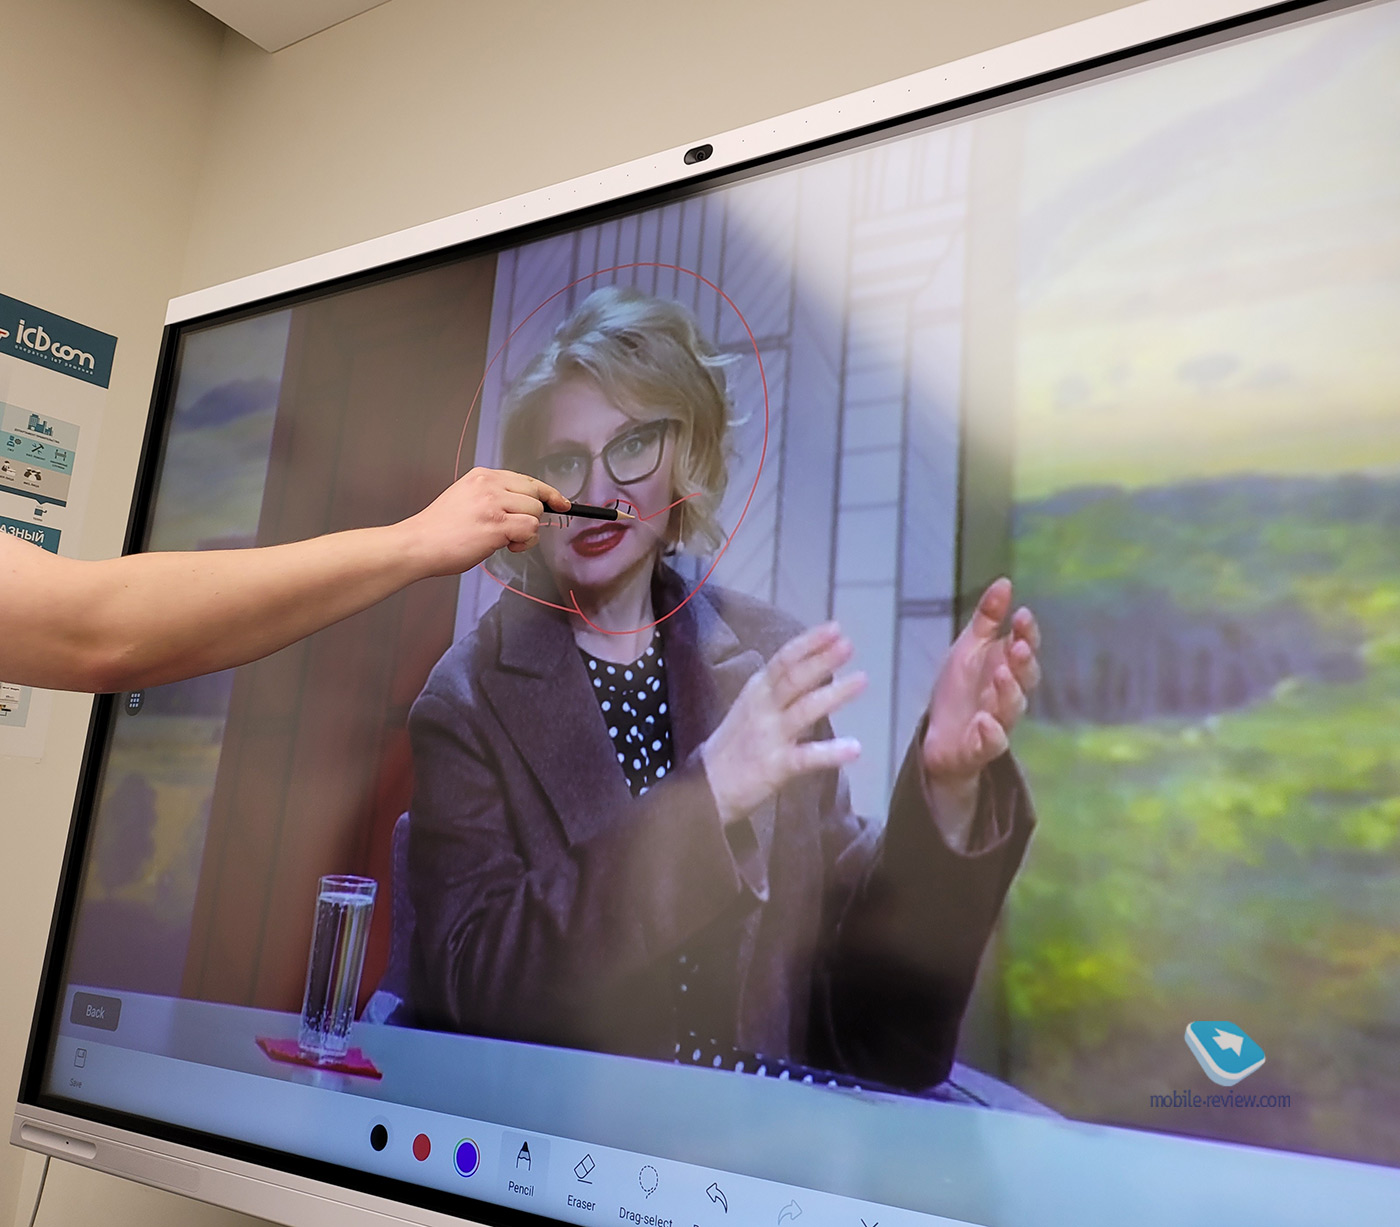 Huawei IdeaHub – умная видеосвязь, интерактивная панель для офисов